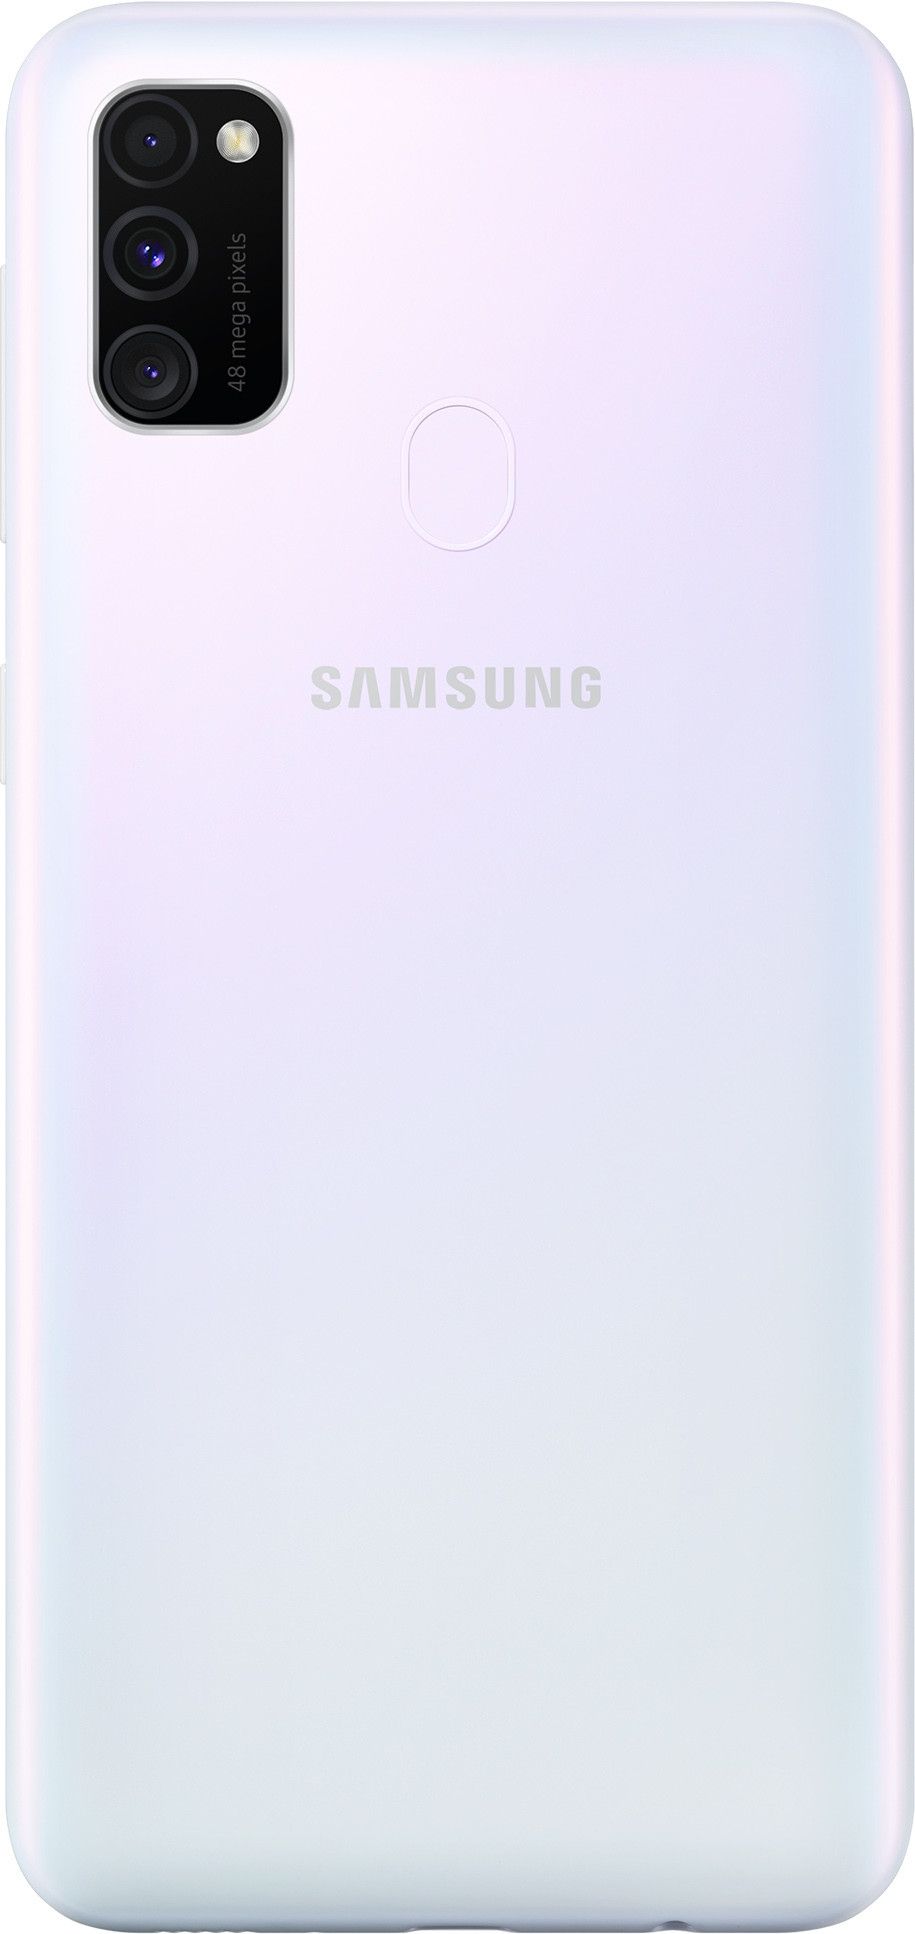 Samsung Galaxy m30s